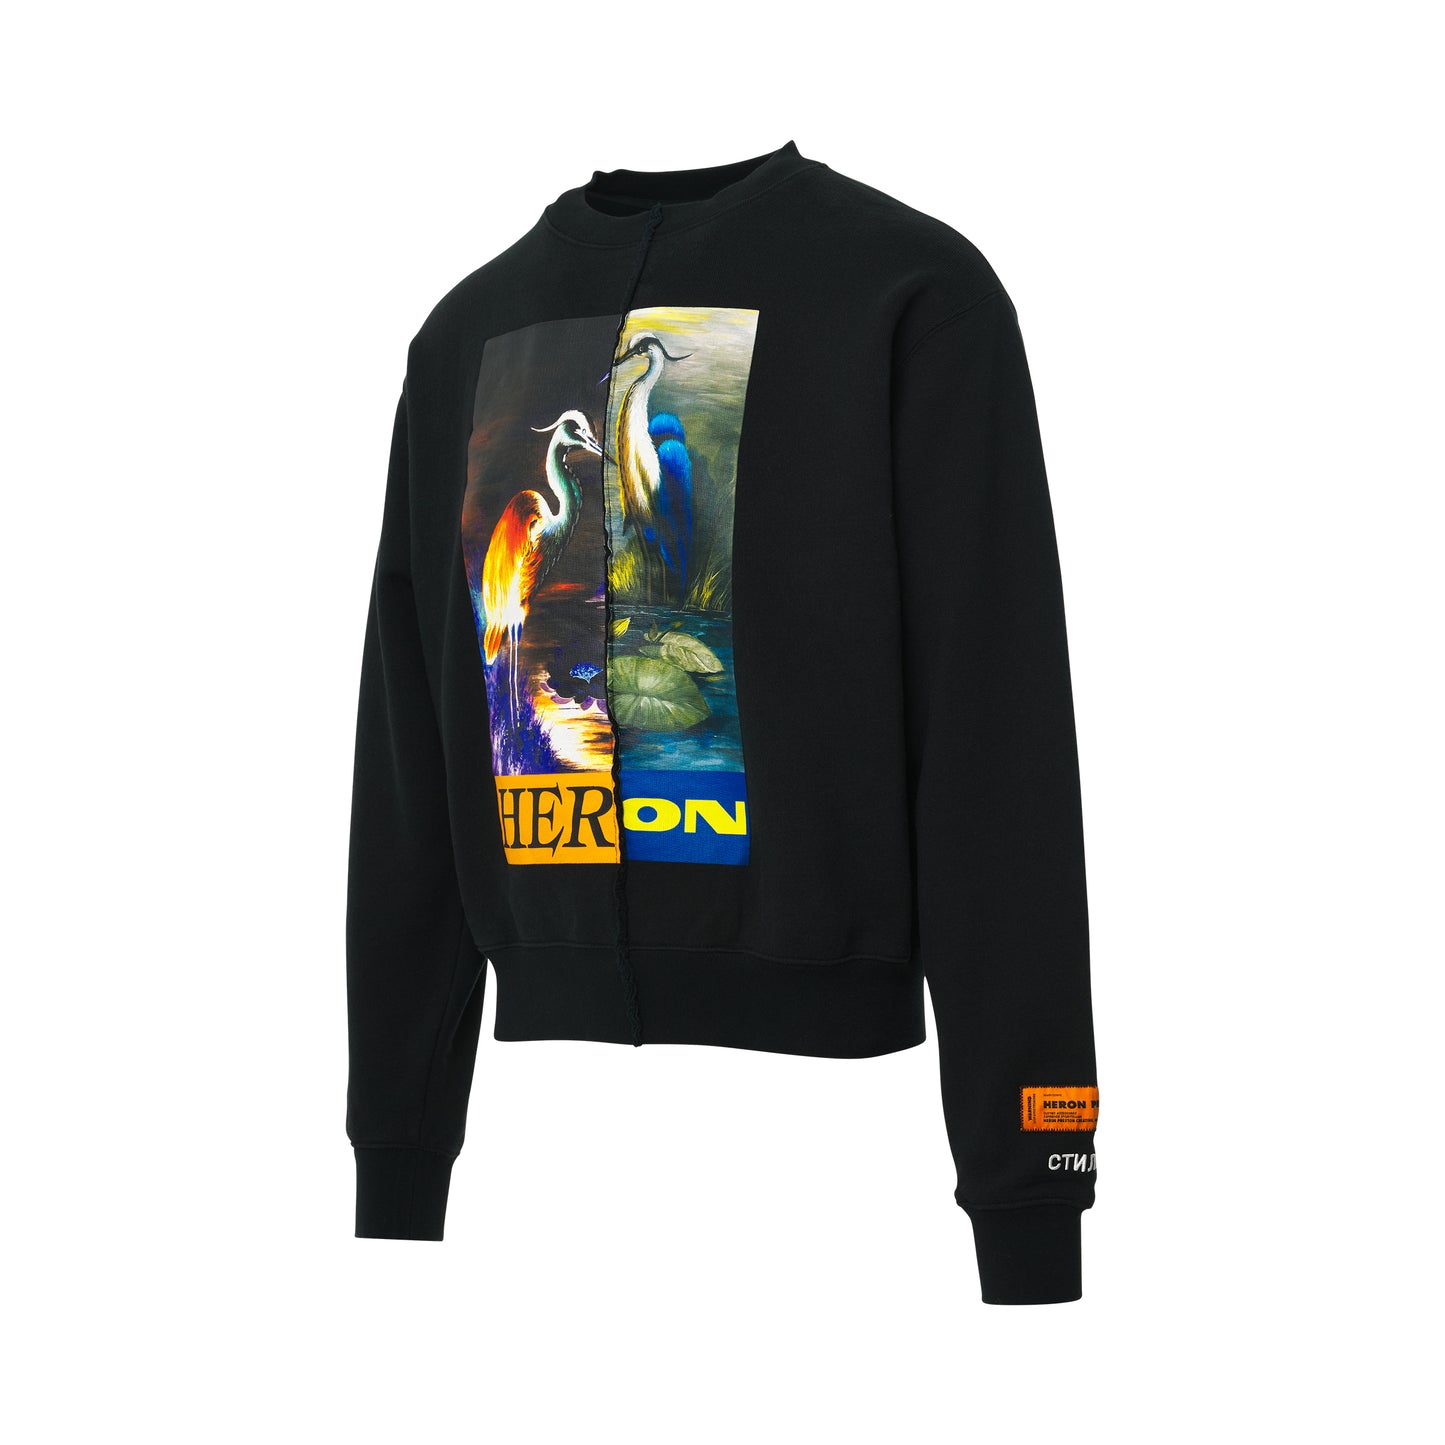 Split Herons Sweatshirt in Black